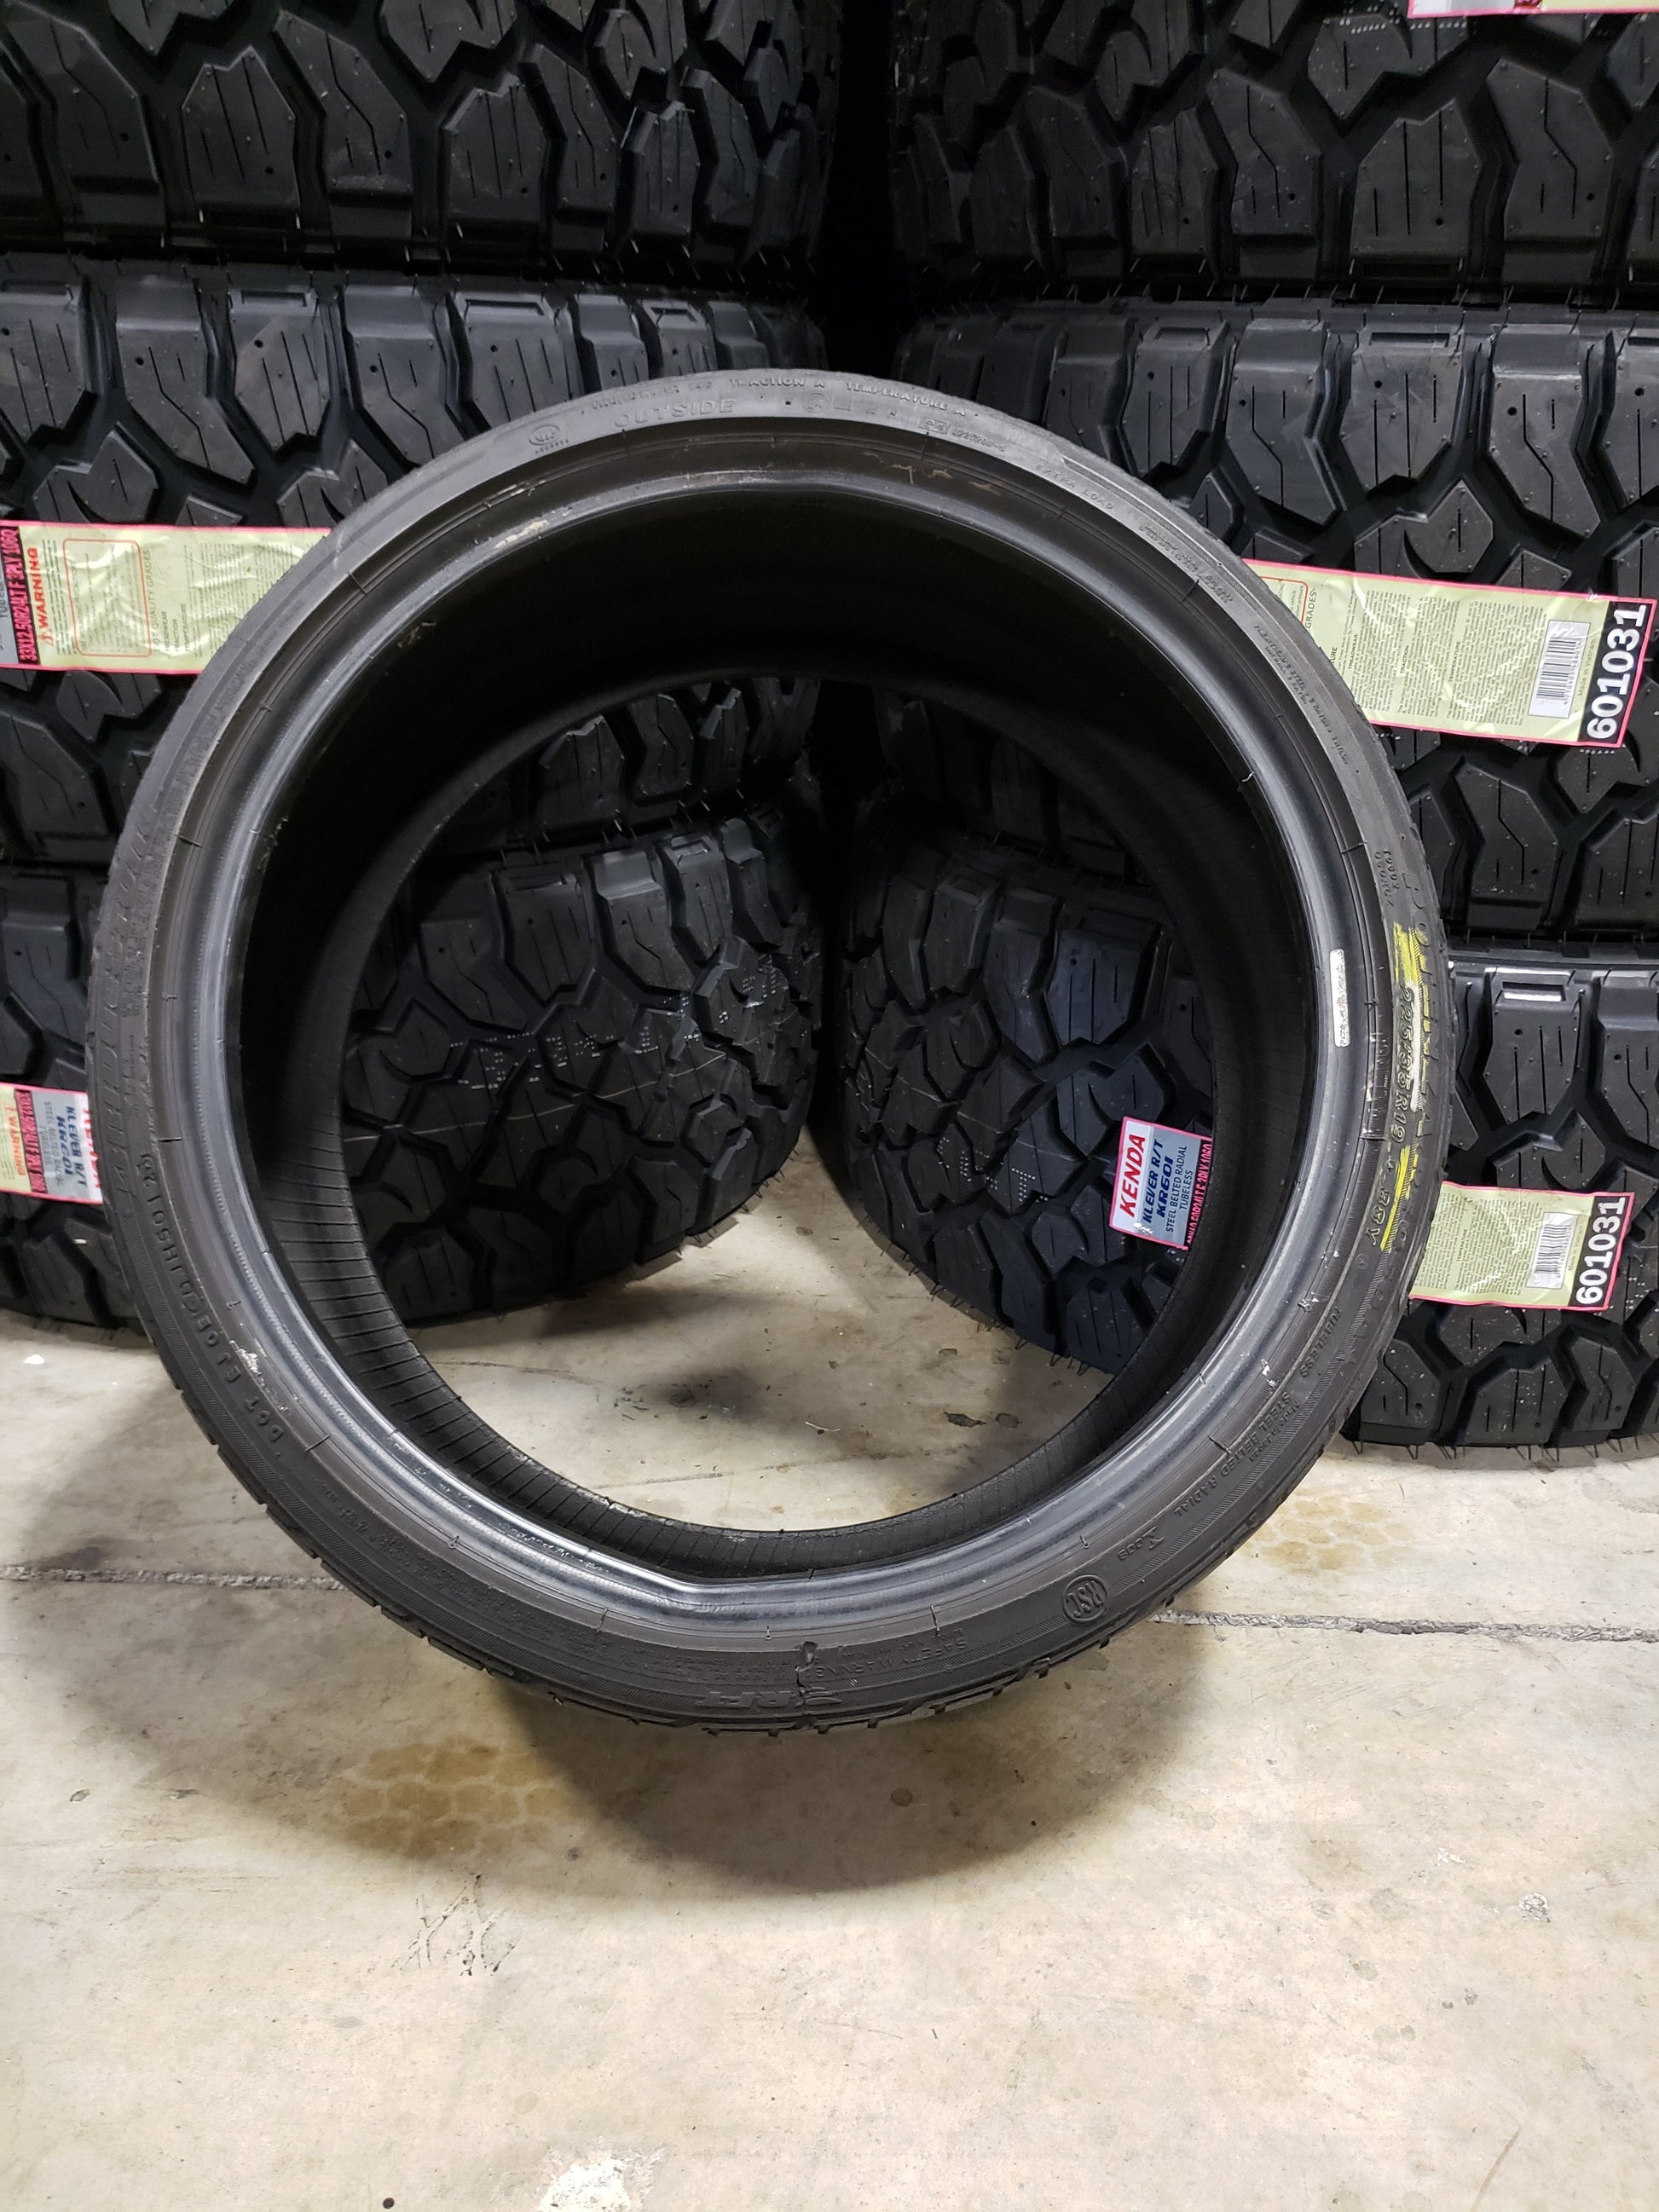 SINGLE 225/35R19 Bridgestone Potenza RE050A RFT 88 Y XL - Used Tires